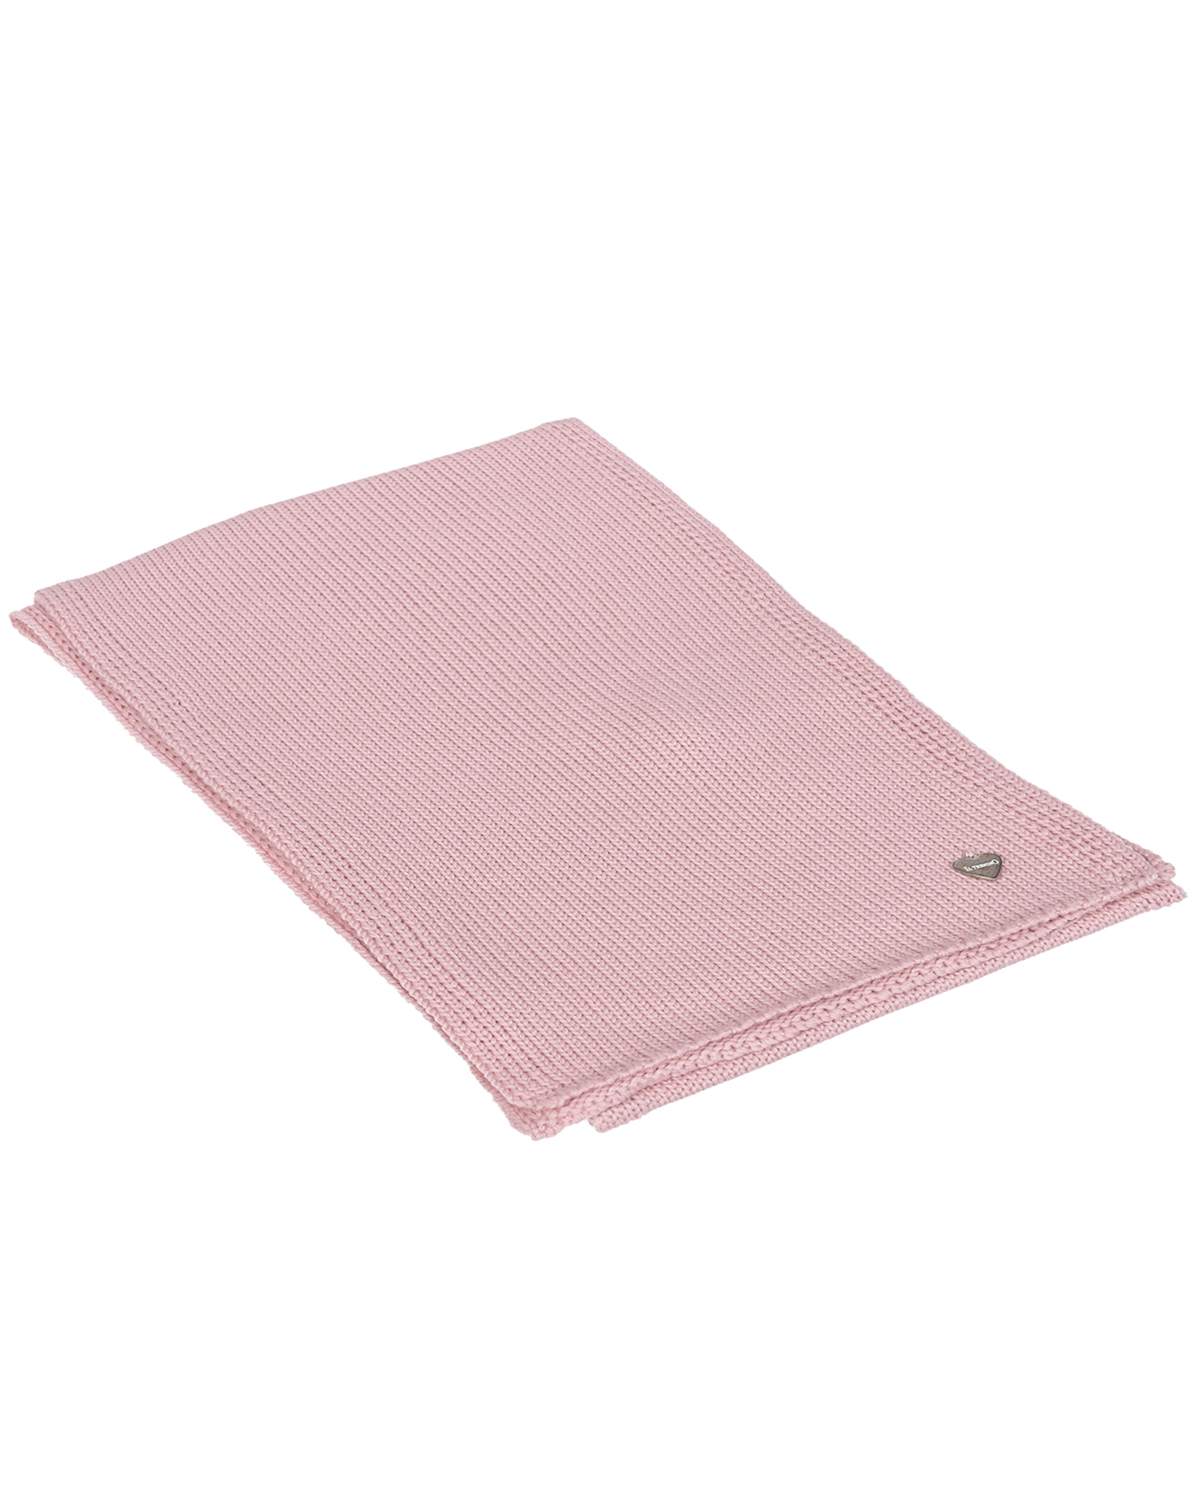 Розовый шарф из шерсти, 20х140 см Il Trenino детский, размер unica